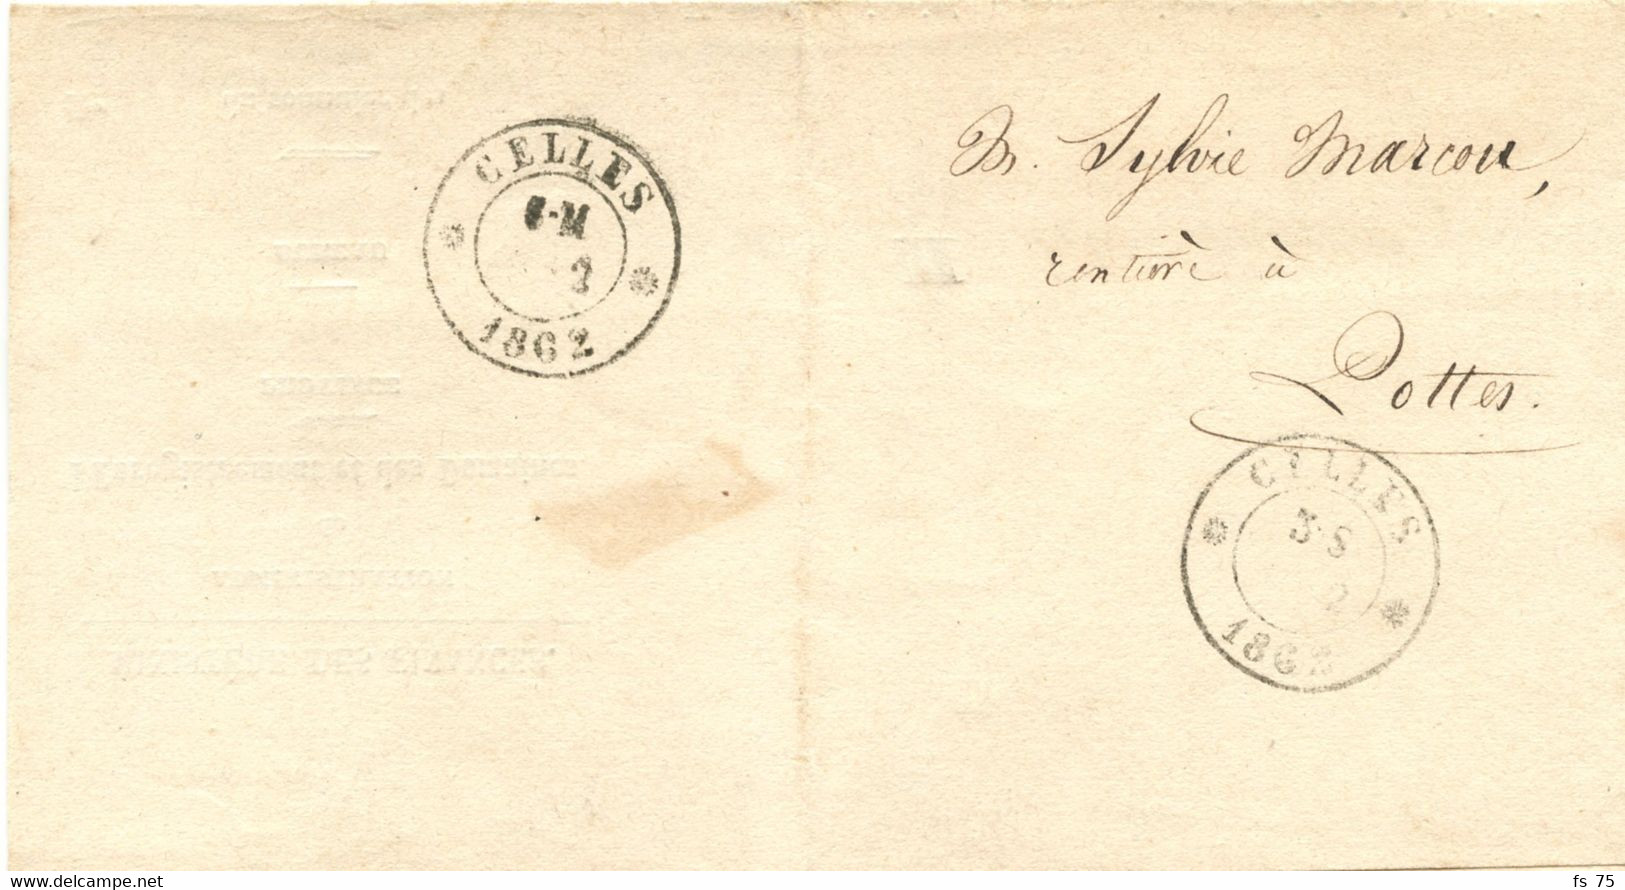 BELGIQUE - TAD DOUBLE CERCLE CELLES SUR LETTRE EN FRANCHISE, 1862 - Franchise